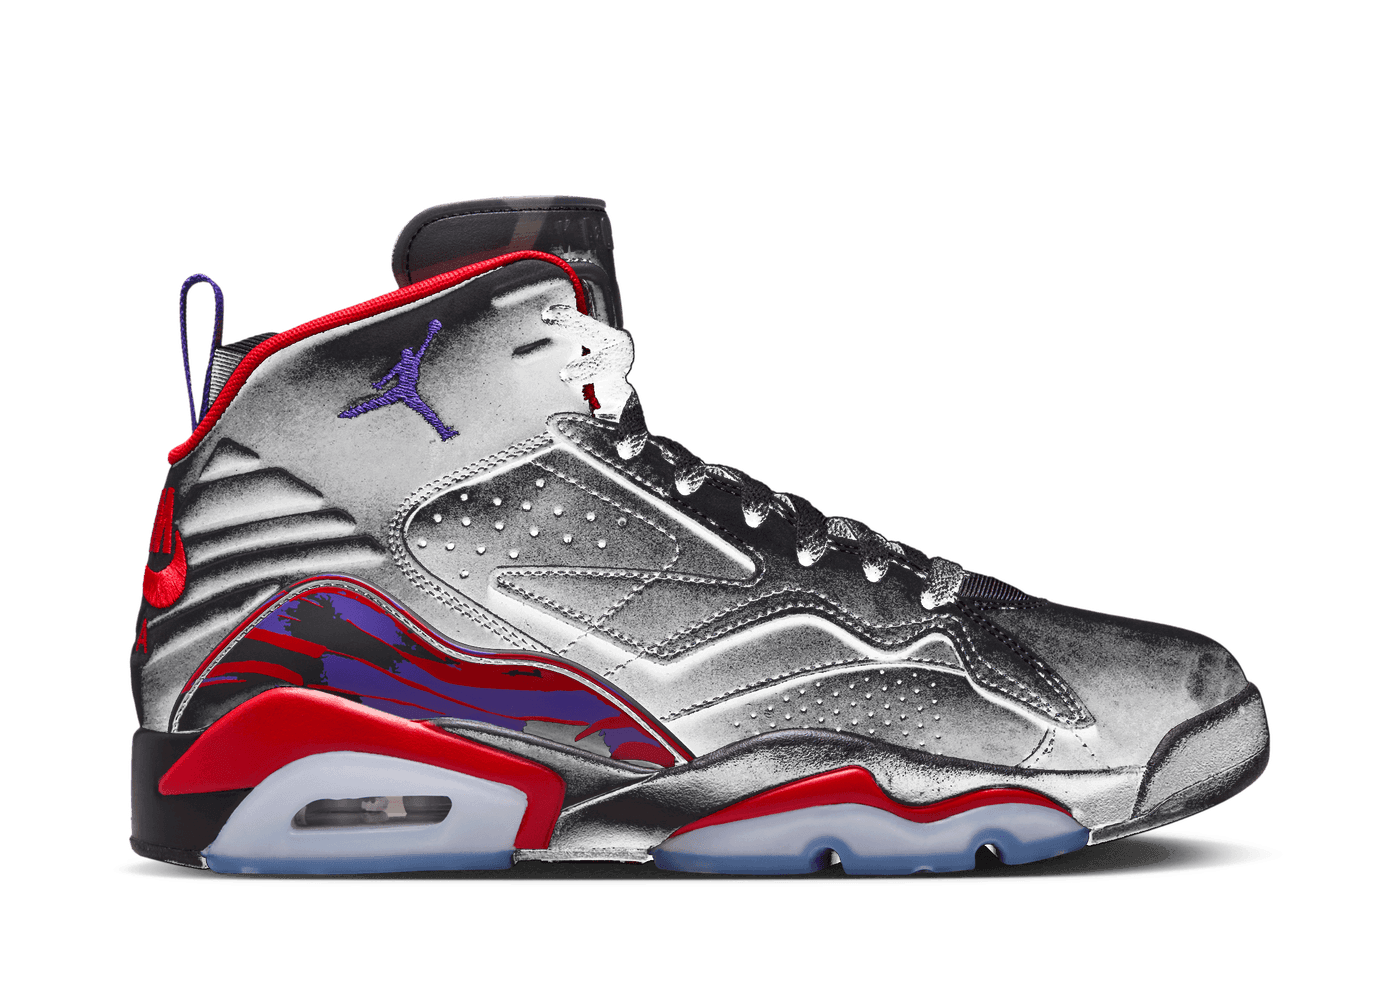 Nike Jordan MVP 'Raptors' - DZ4475-006 Raffles and Release Date